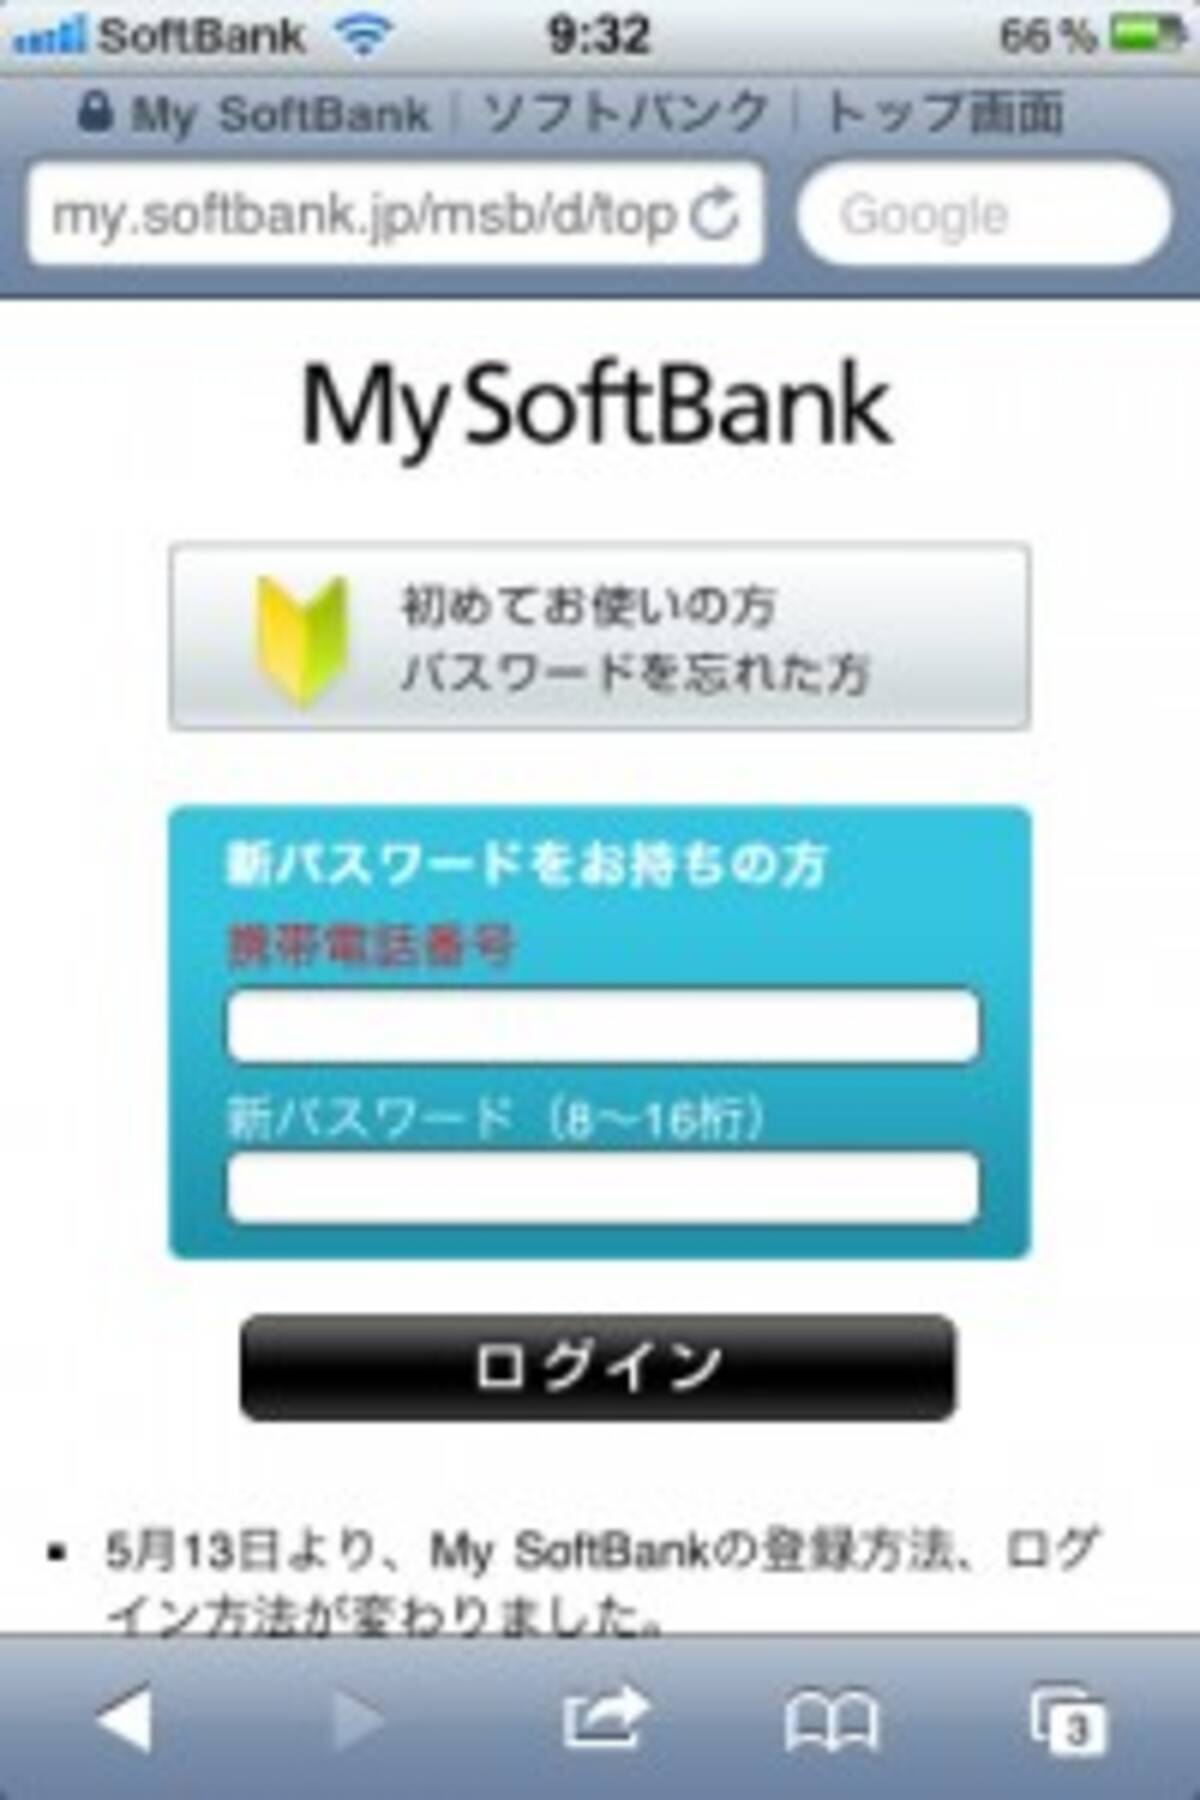 Iphone Tips ソフトバンクeメールアドレス I Softbank Jp のパスワードを忘れたら 11年2月9日 エキサイトニュース